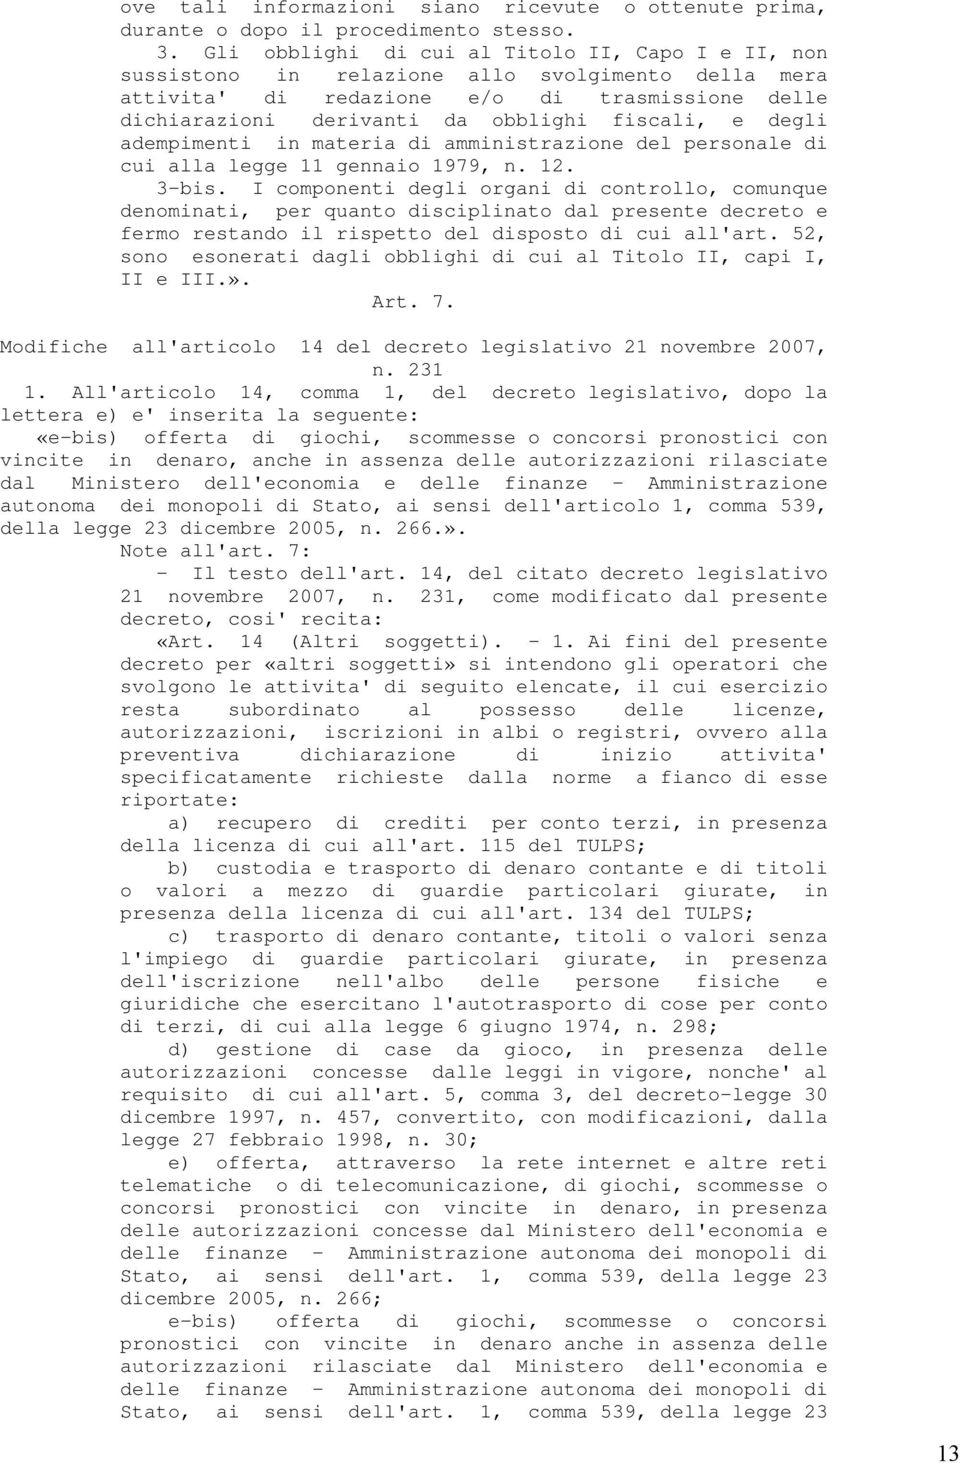 degli adempimenti in materia di amministrazione del personale di cui alla legge 11 gennaio 1979, n. 12. 3-bis.